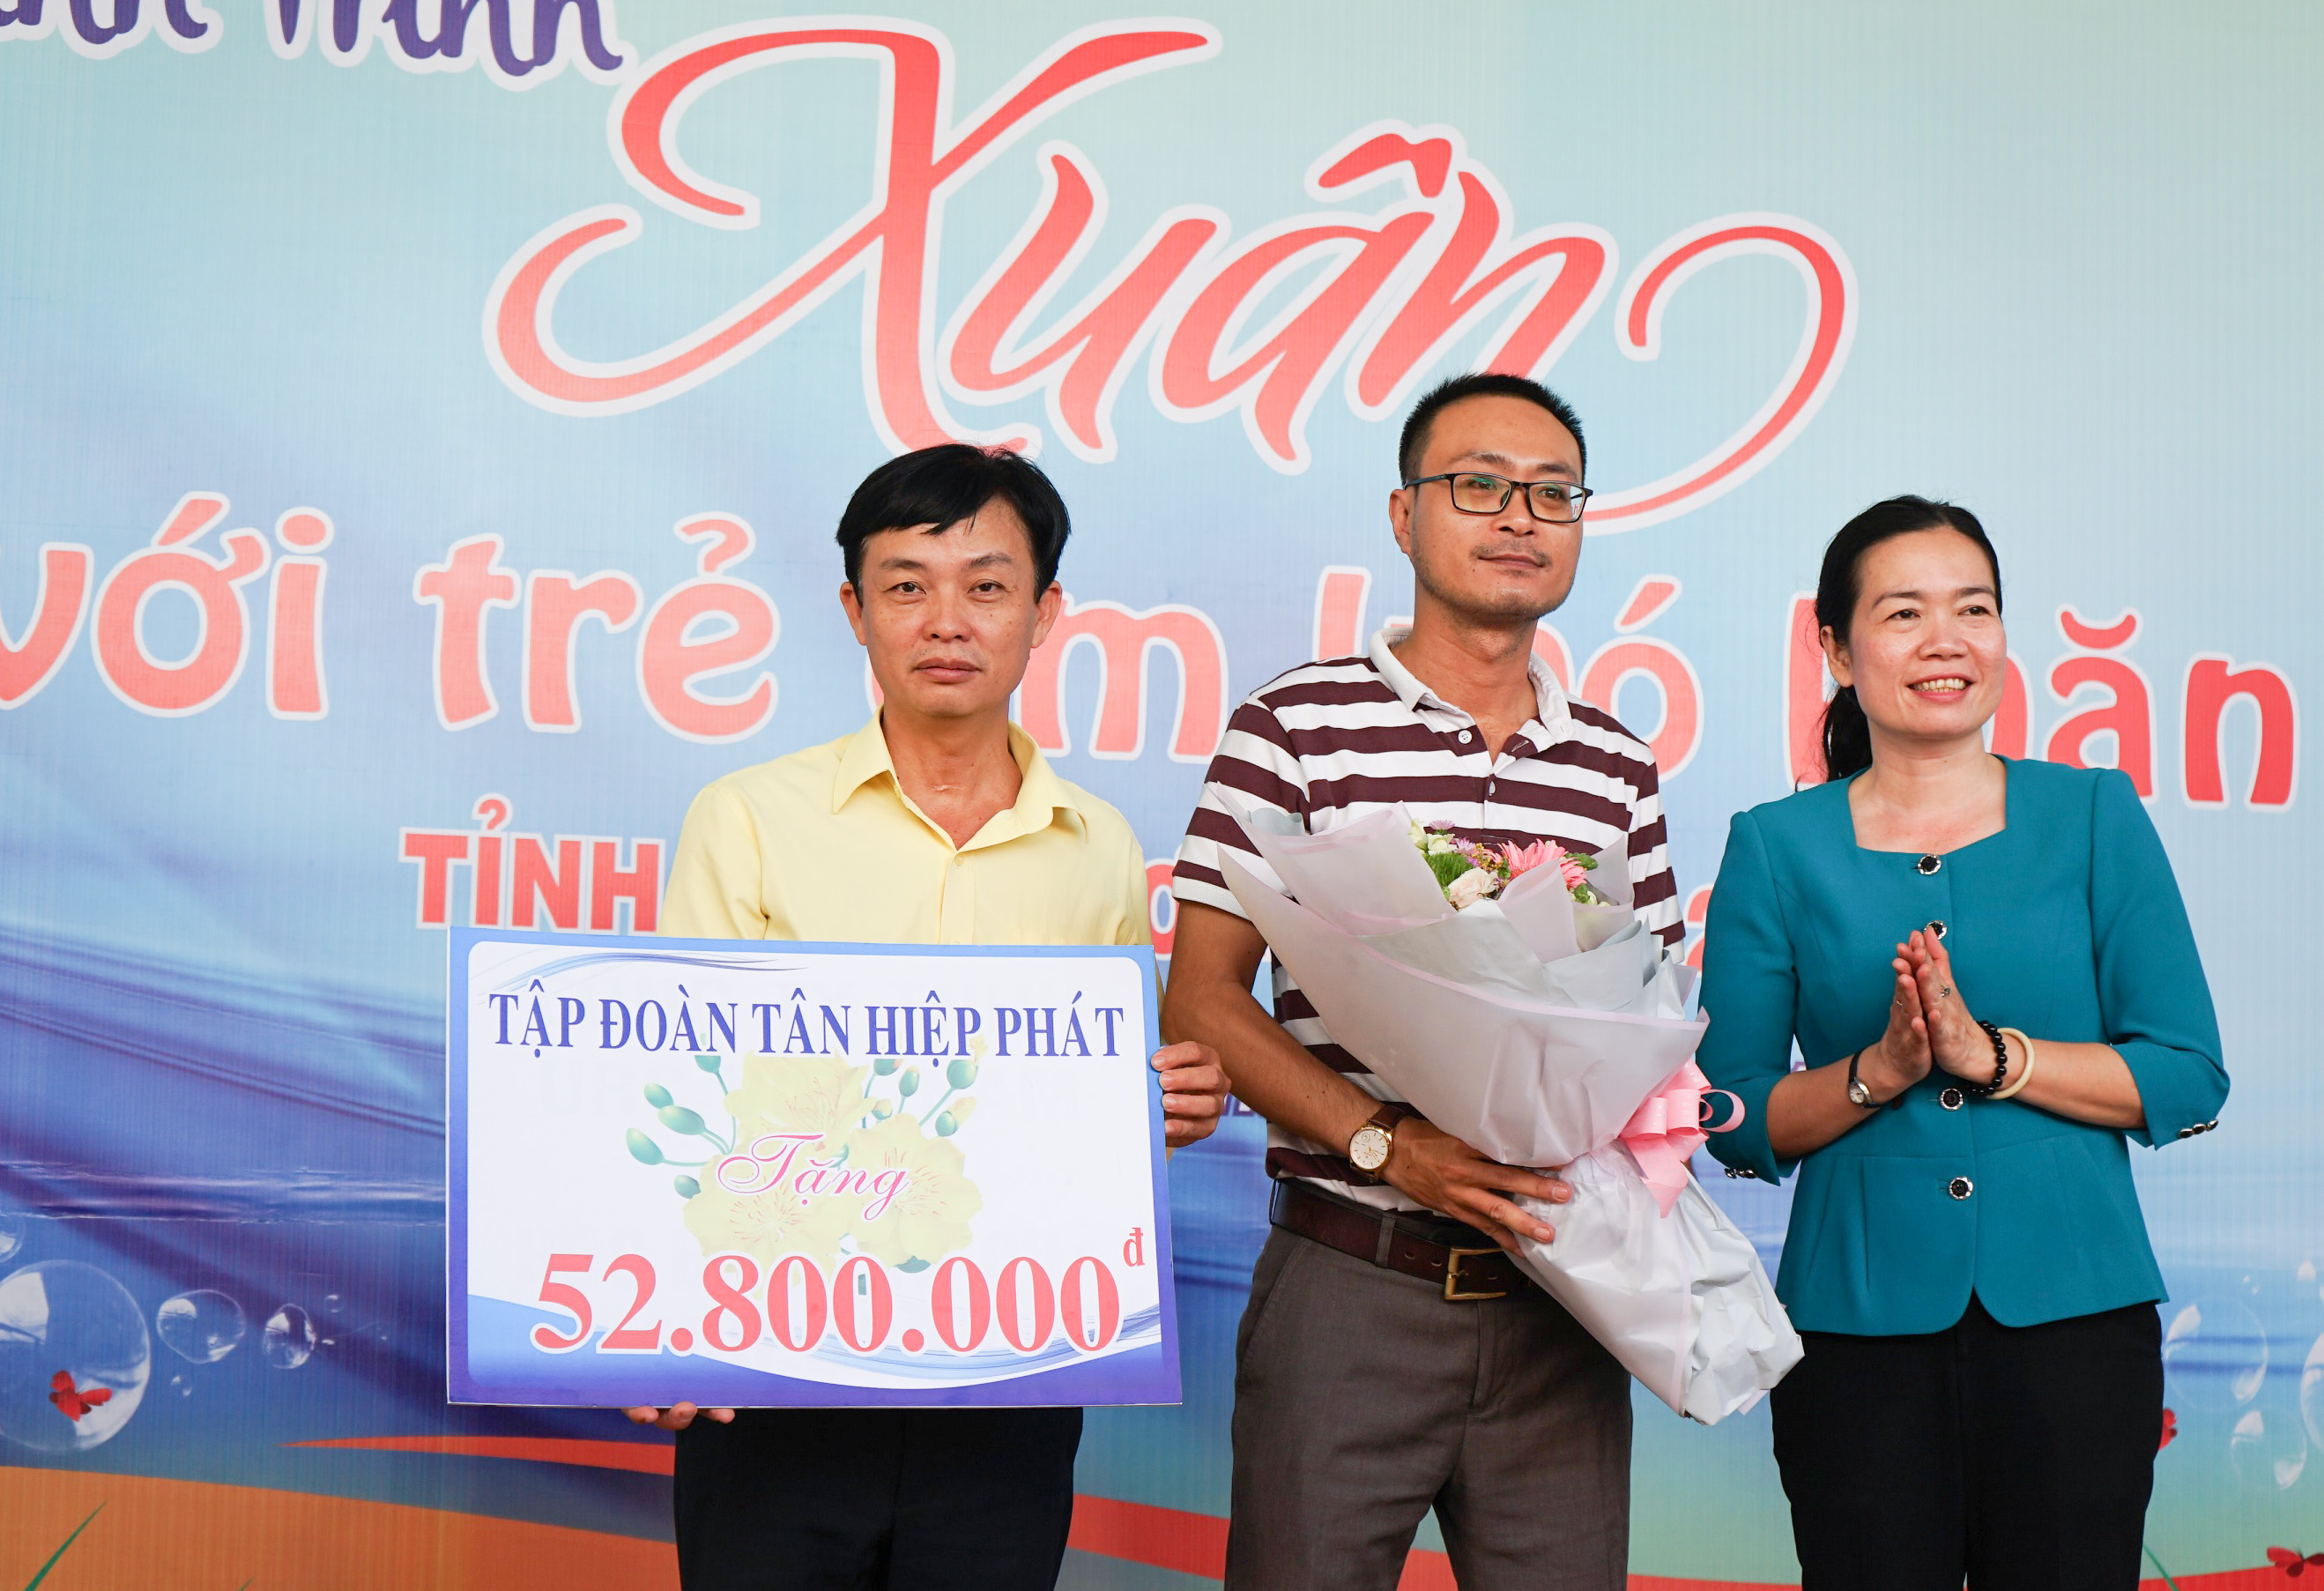 Ông Lê Nguyễn Đức Khôi, Trưởng phòng quan hệ công chúng Tập đoàn Tân Hiệp Phát nhận hoa từ Quỹ Bảo trợ trẻ em tỉnh Bình Dương